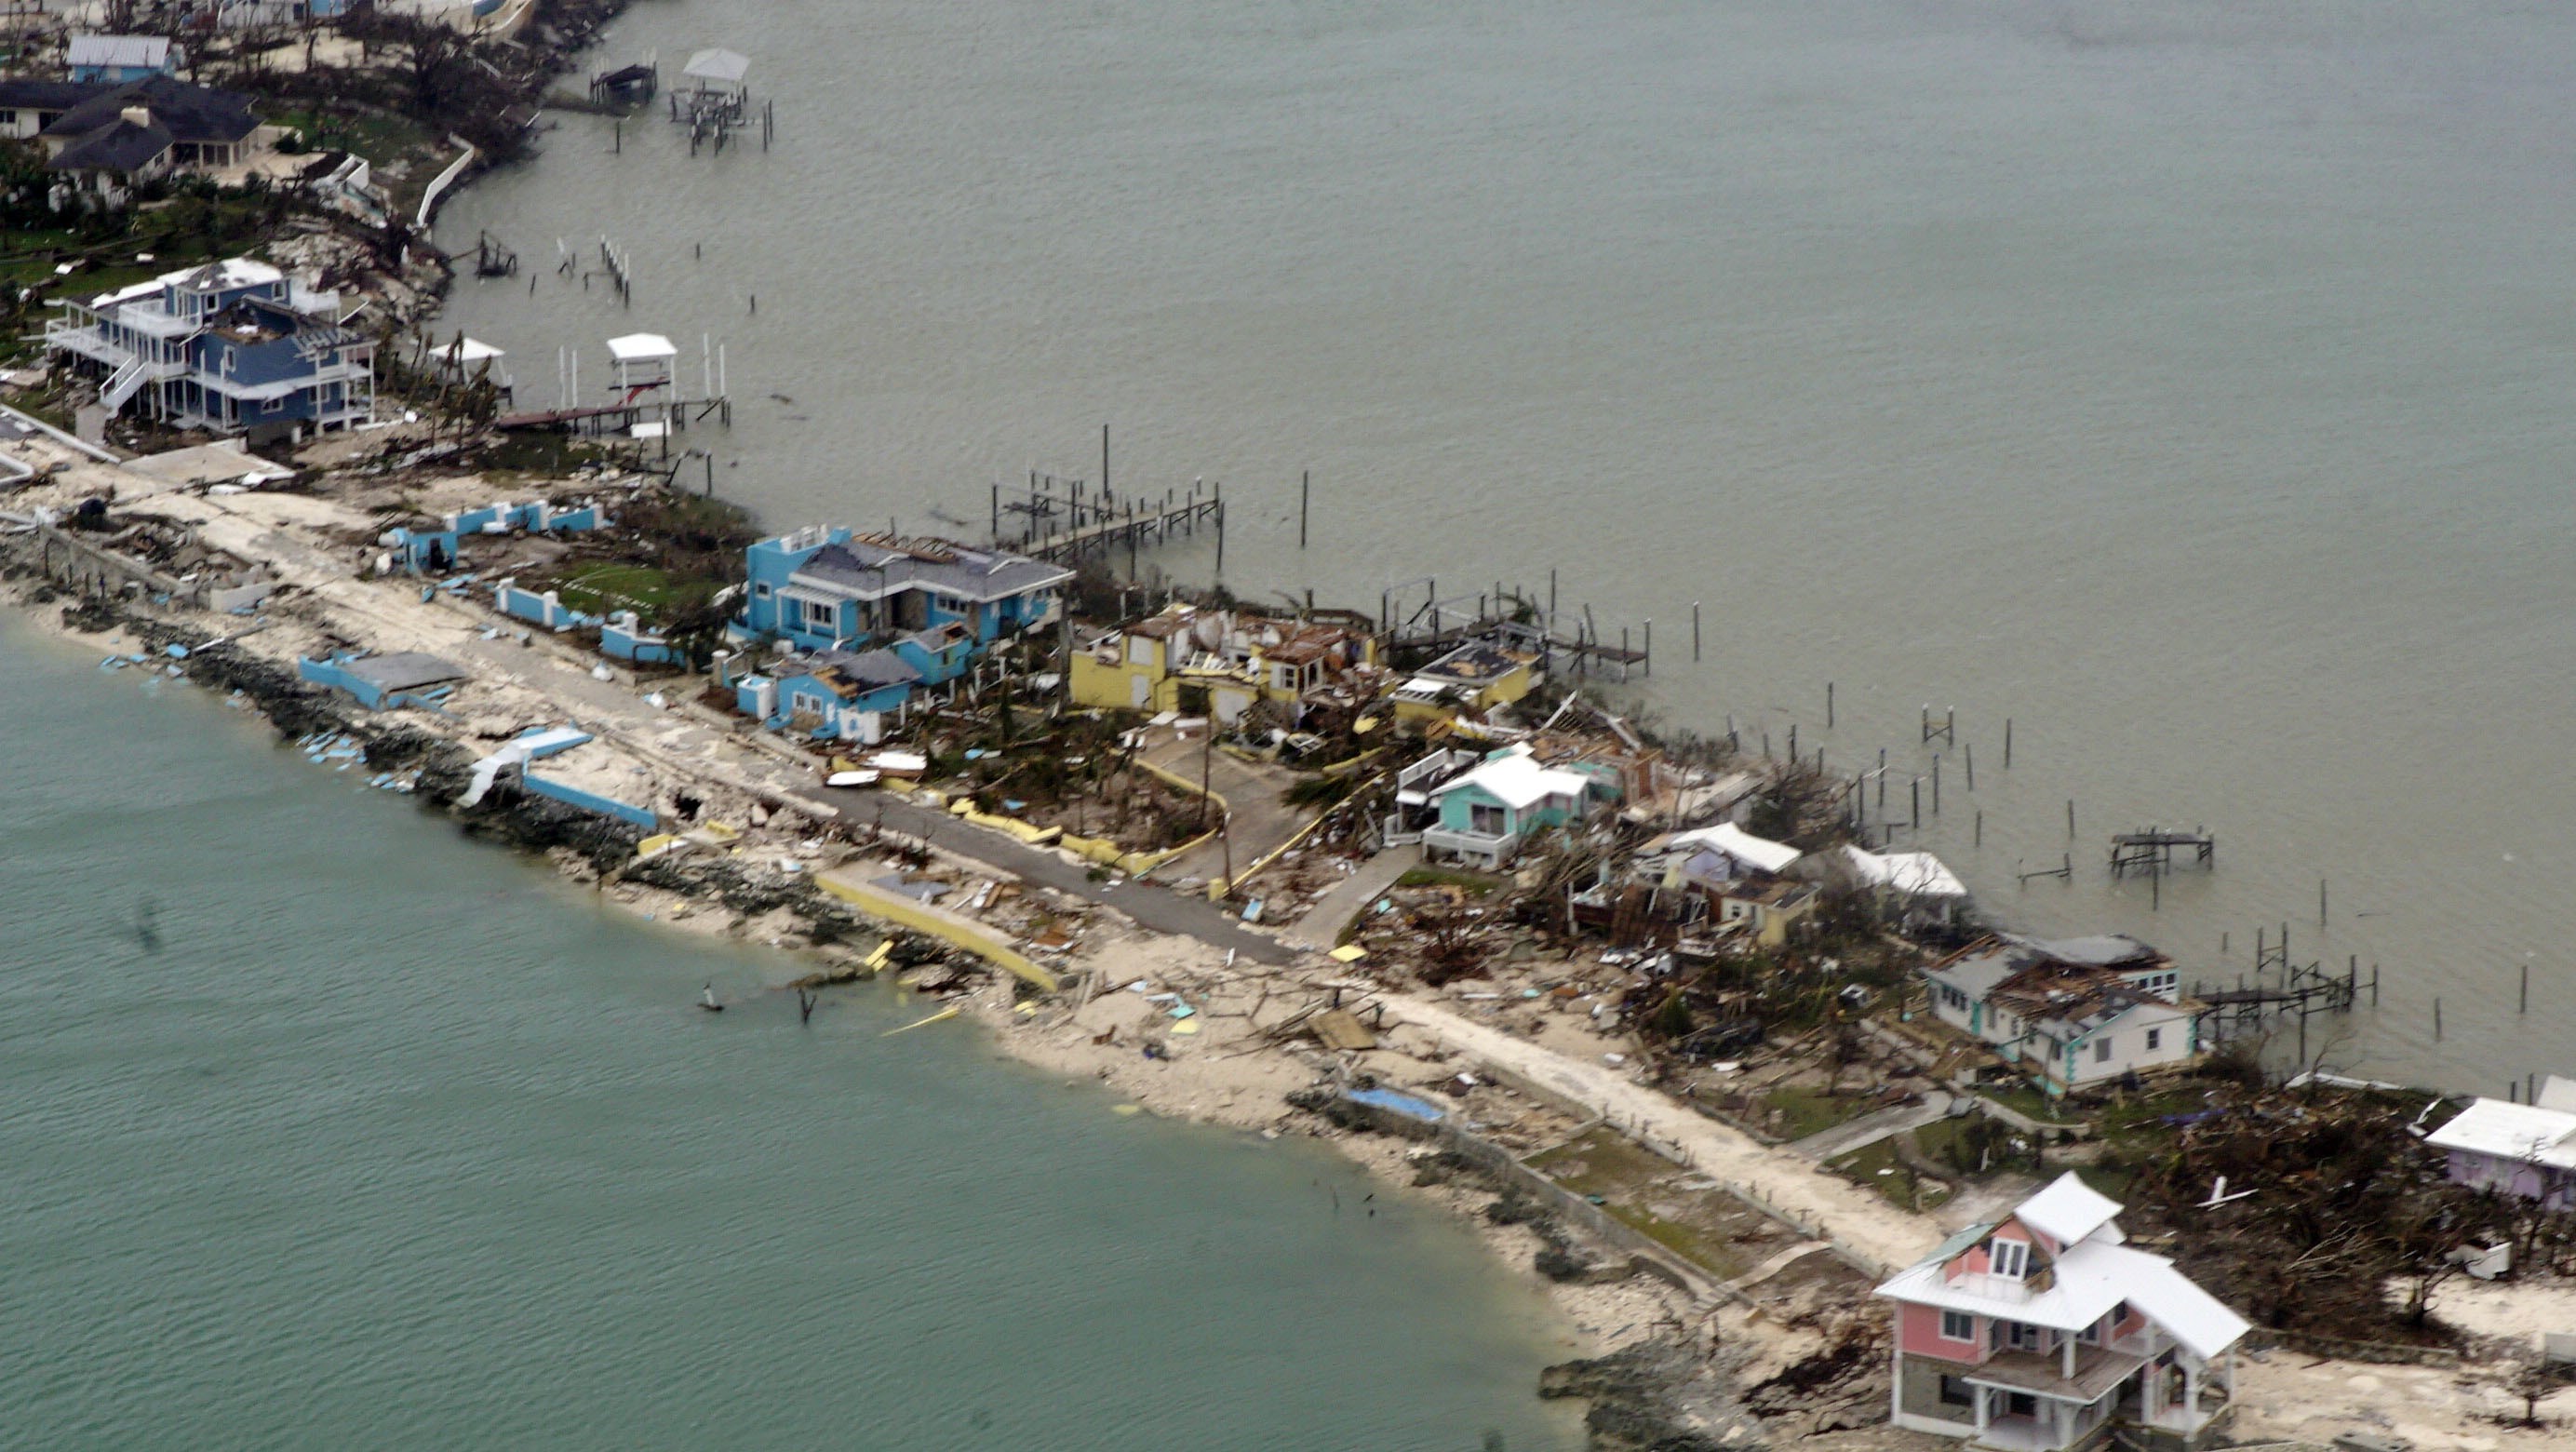 Unas 70 mil personas necesitan ayuda en las Bahamas tras el paso de Dorian, según la ONU